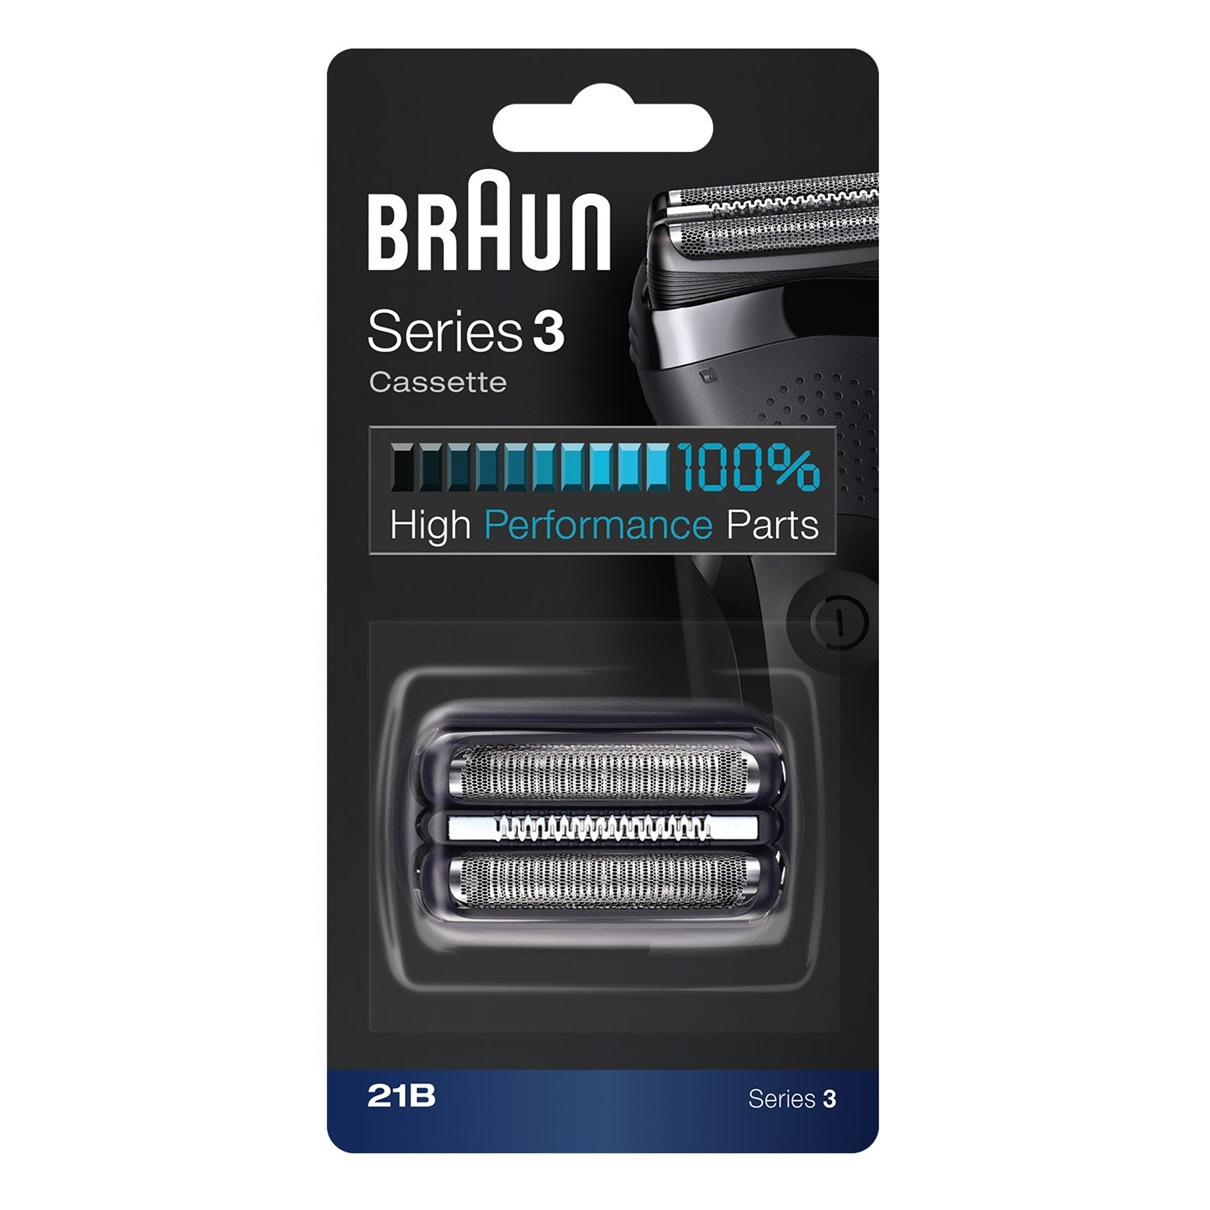 Сетка и режущий блок для бритв Braun 21B сетка для бритв braun серии 1000 2000 597